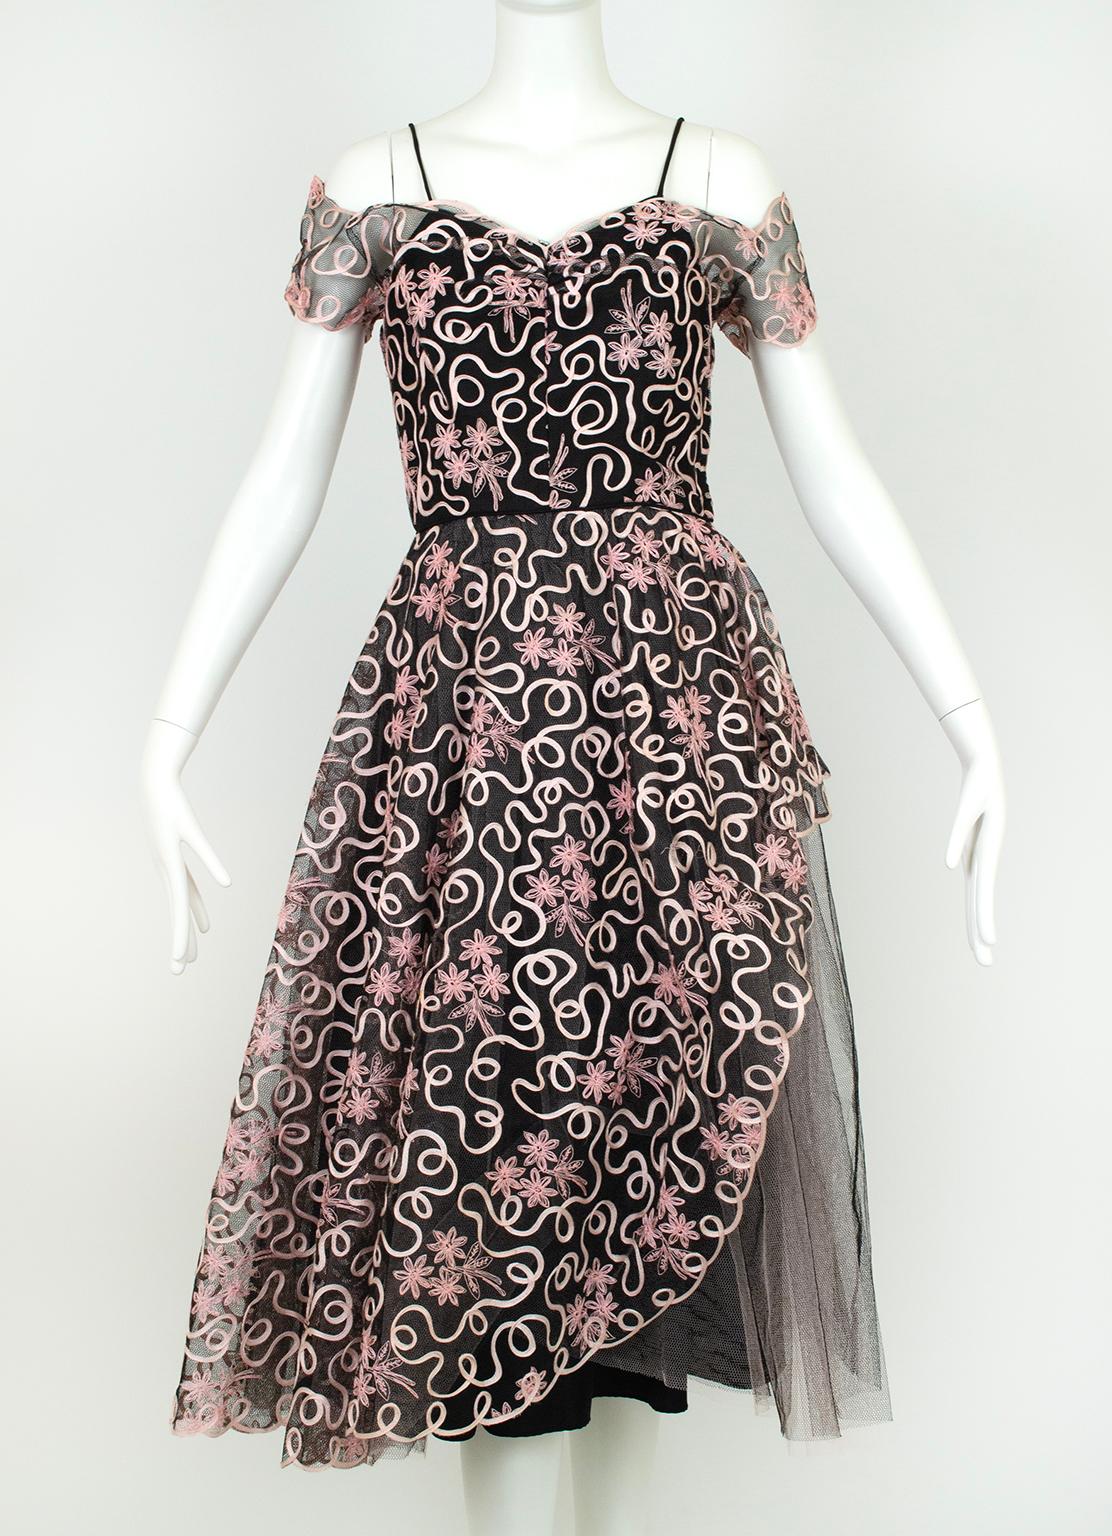 Die Kombination aus Schwarz und Rosa macht dieses Kleid verführerisch und unschuldig zugleich. Es ist mit einem asymmetrischen Schößchen in Minarete-Silhouette